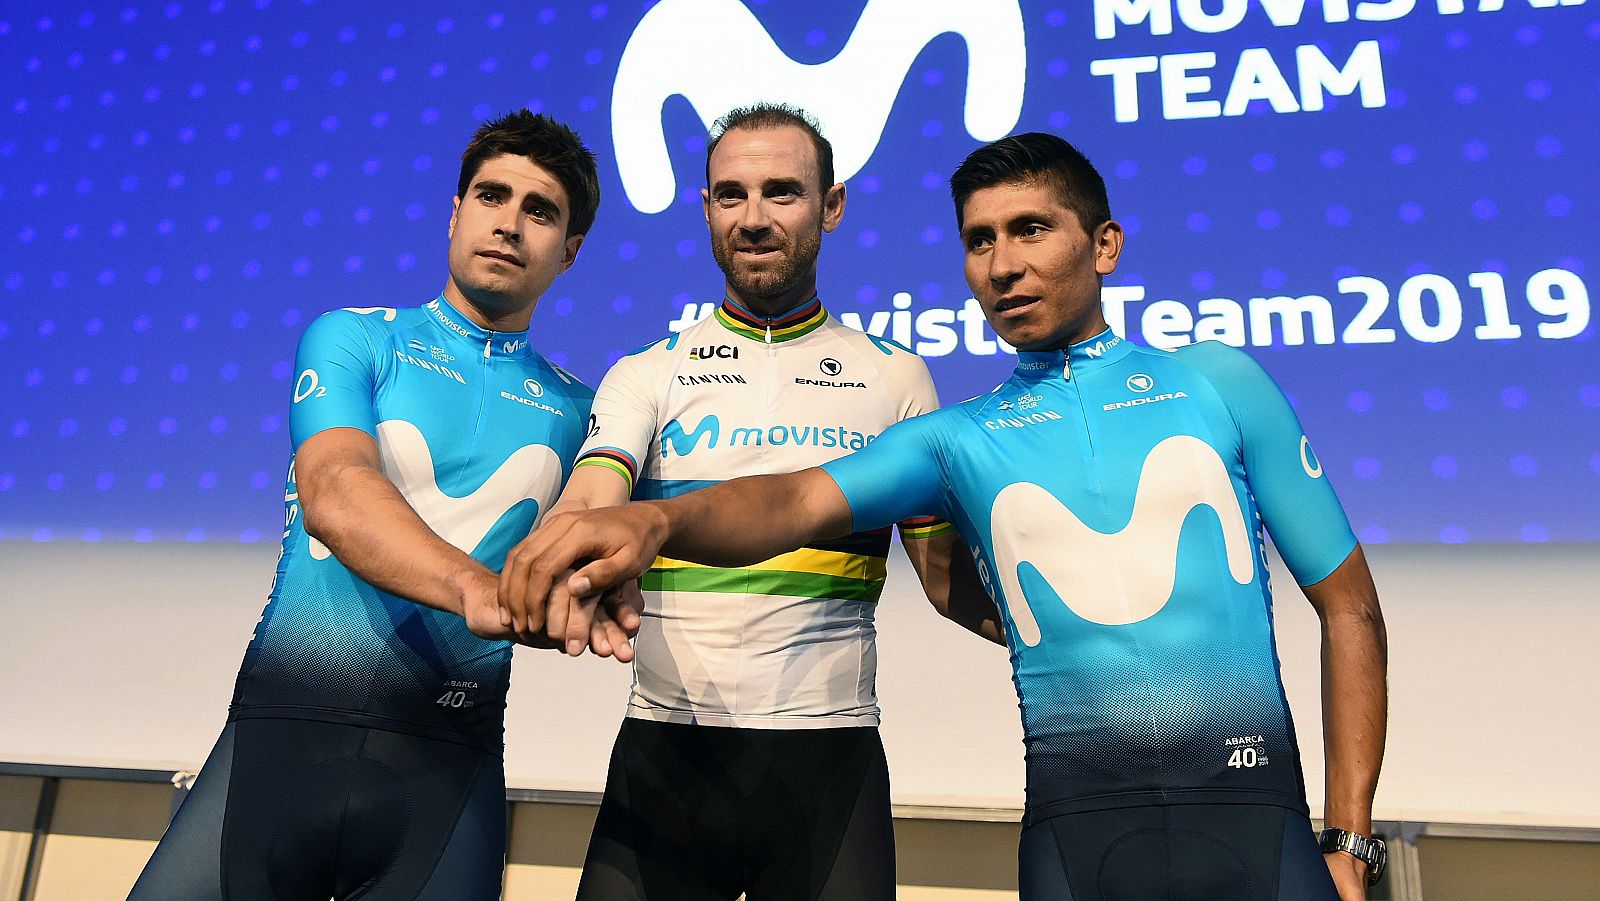 De izquierda a derecha, Mikel Landa, Alejandro Valverde y Nairo Quintana, del Movistar.